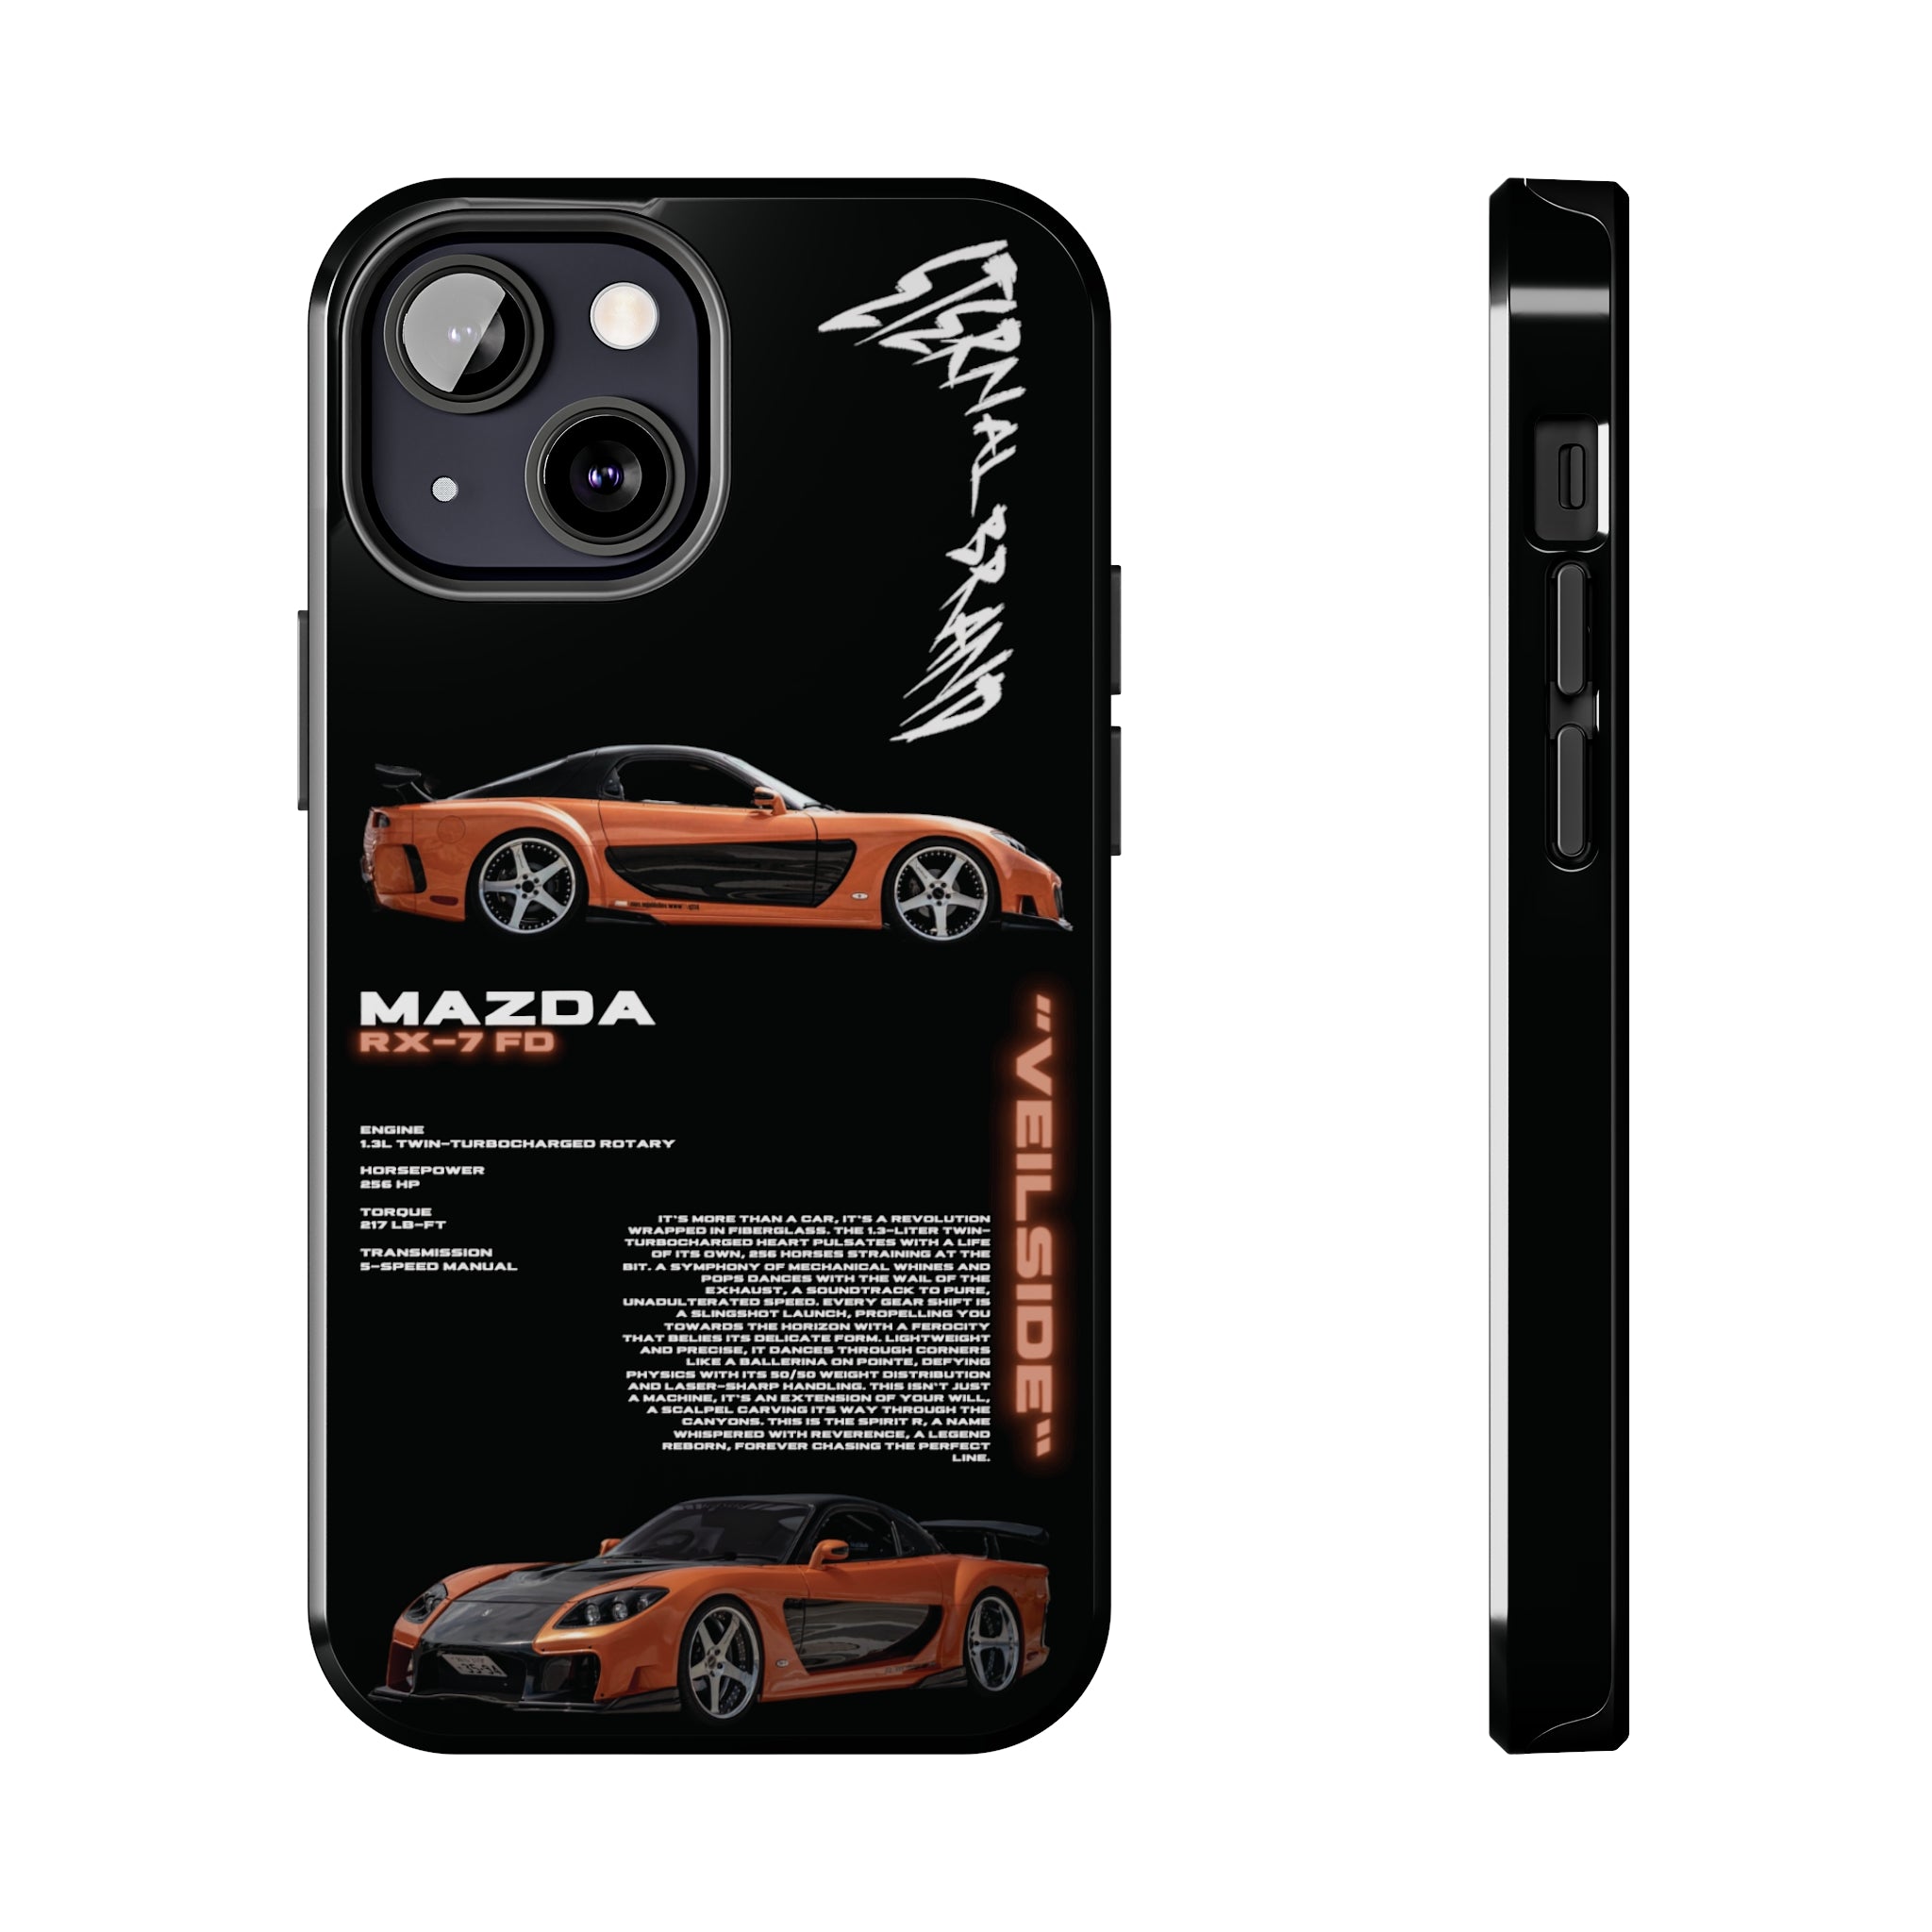 Veilside Mazda RX7 FD "Noir"